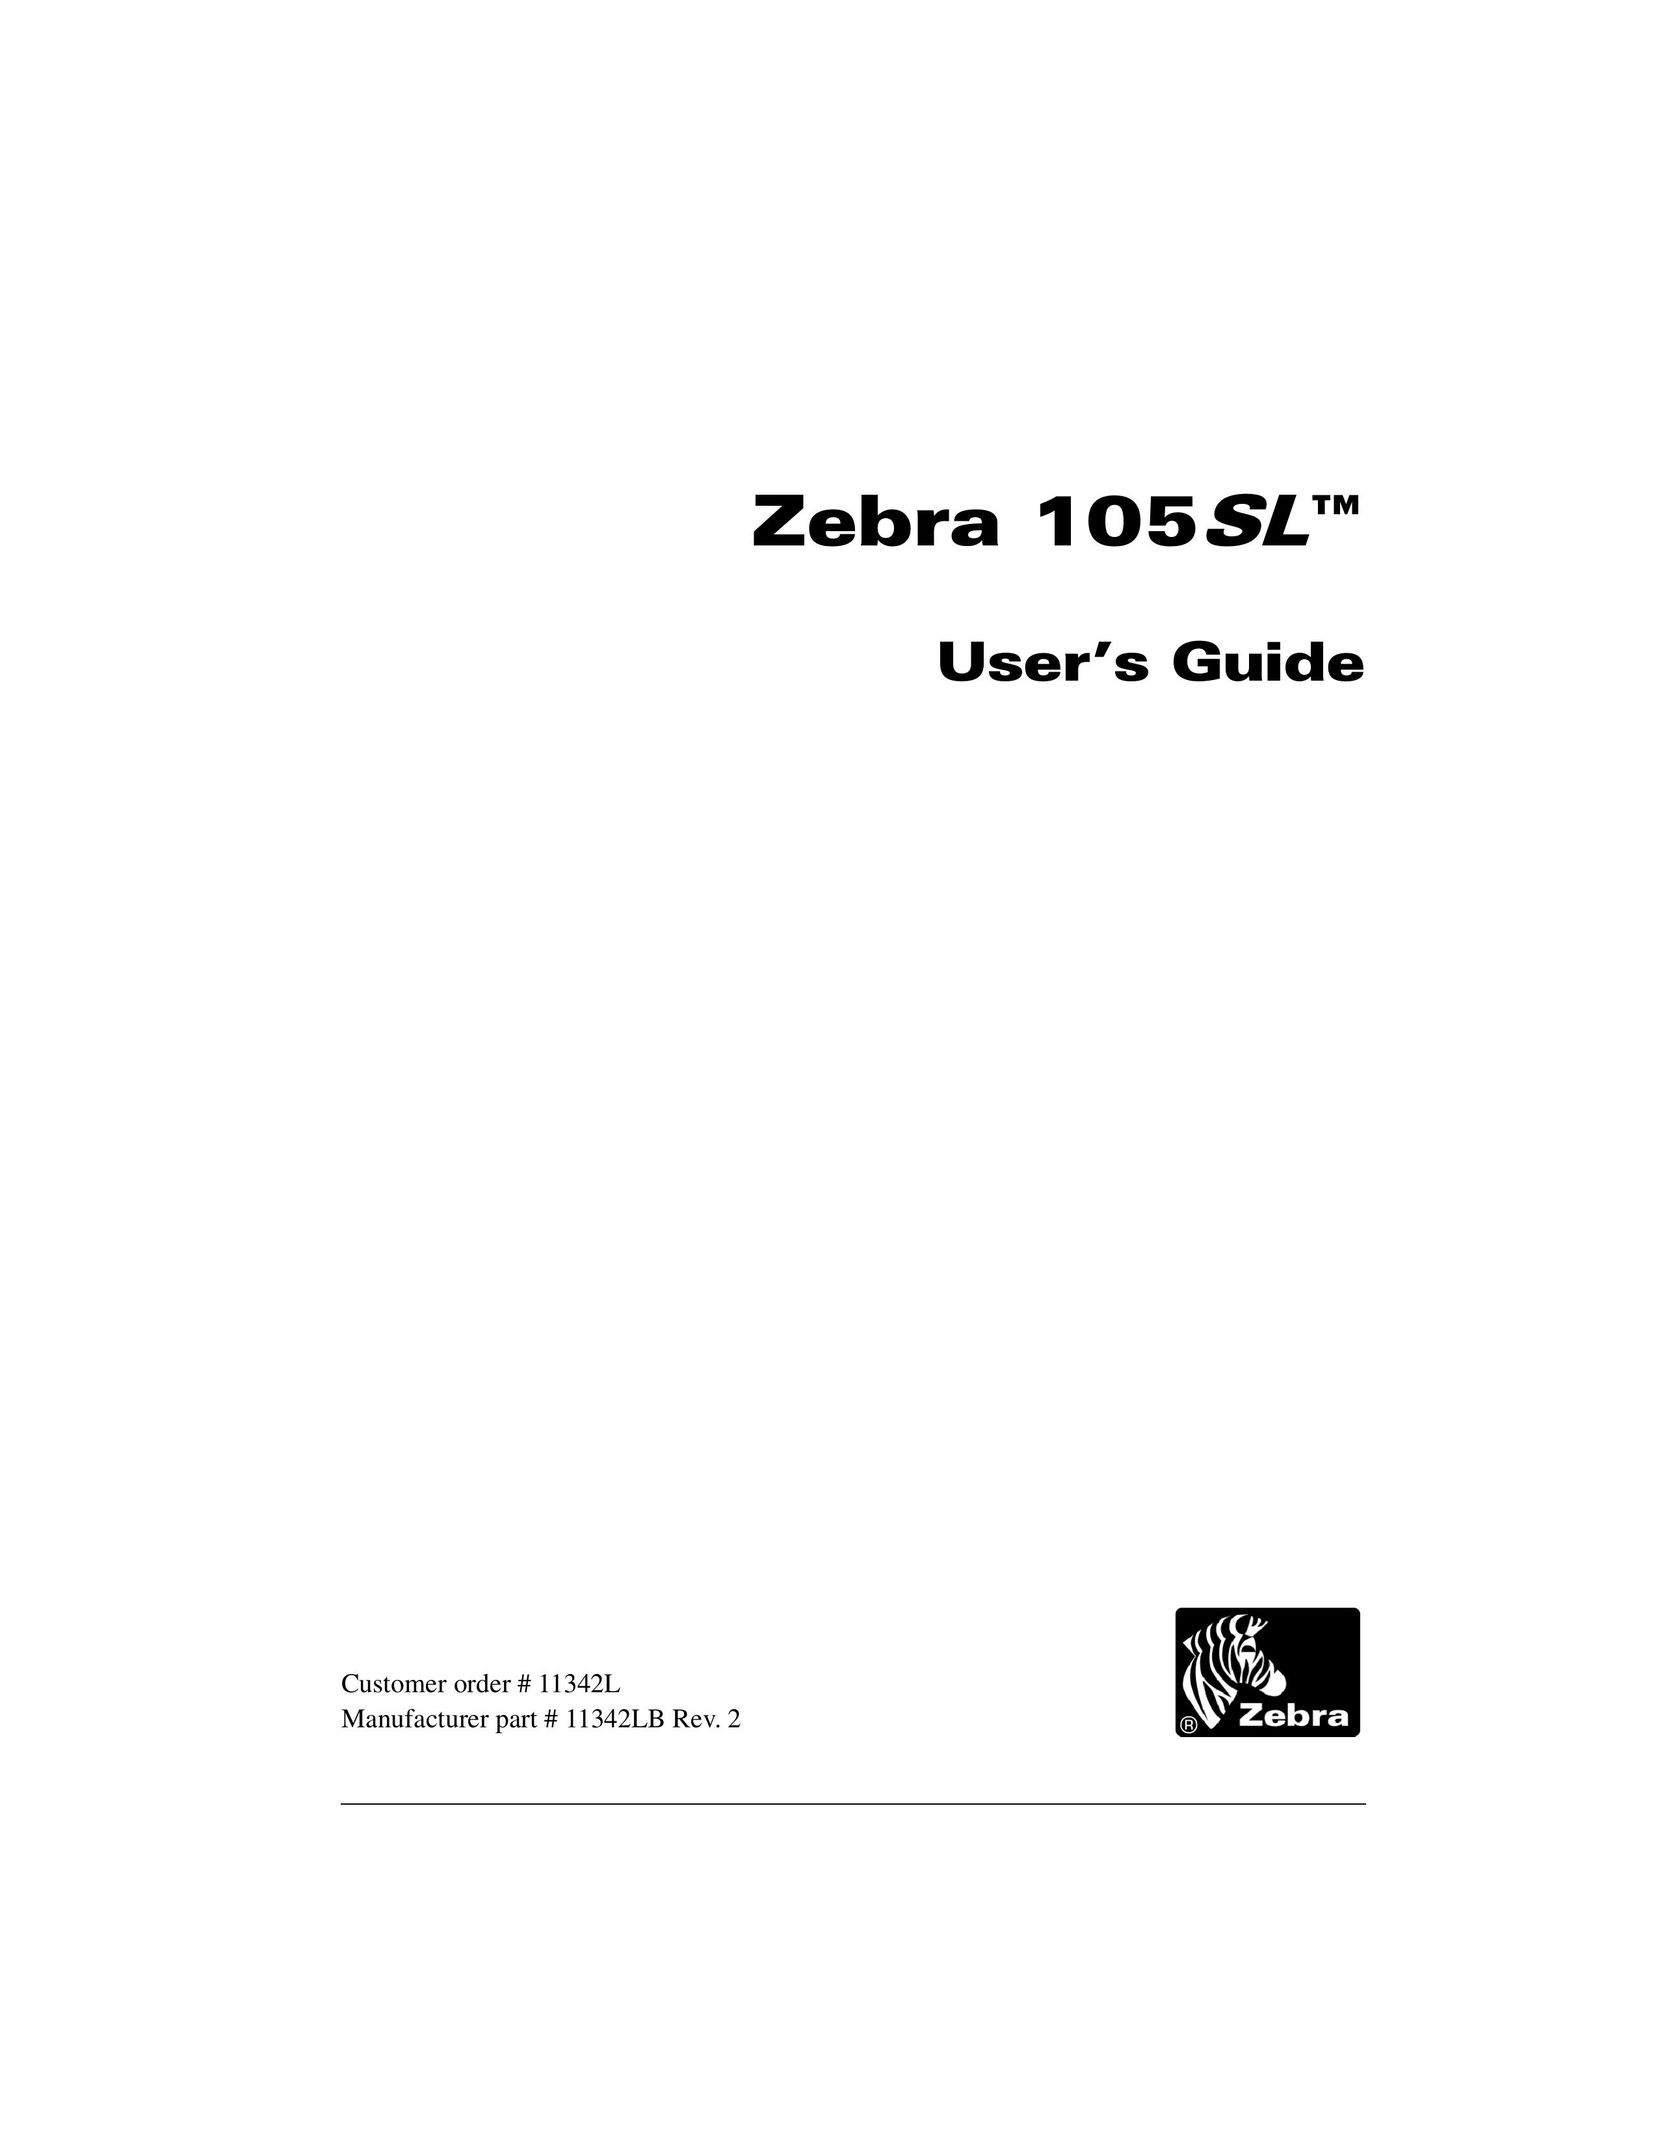 Zebra Technologies 105SL Printer User Manual